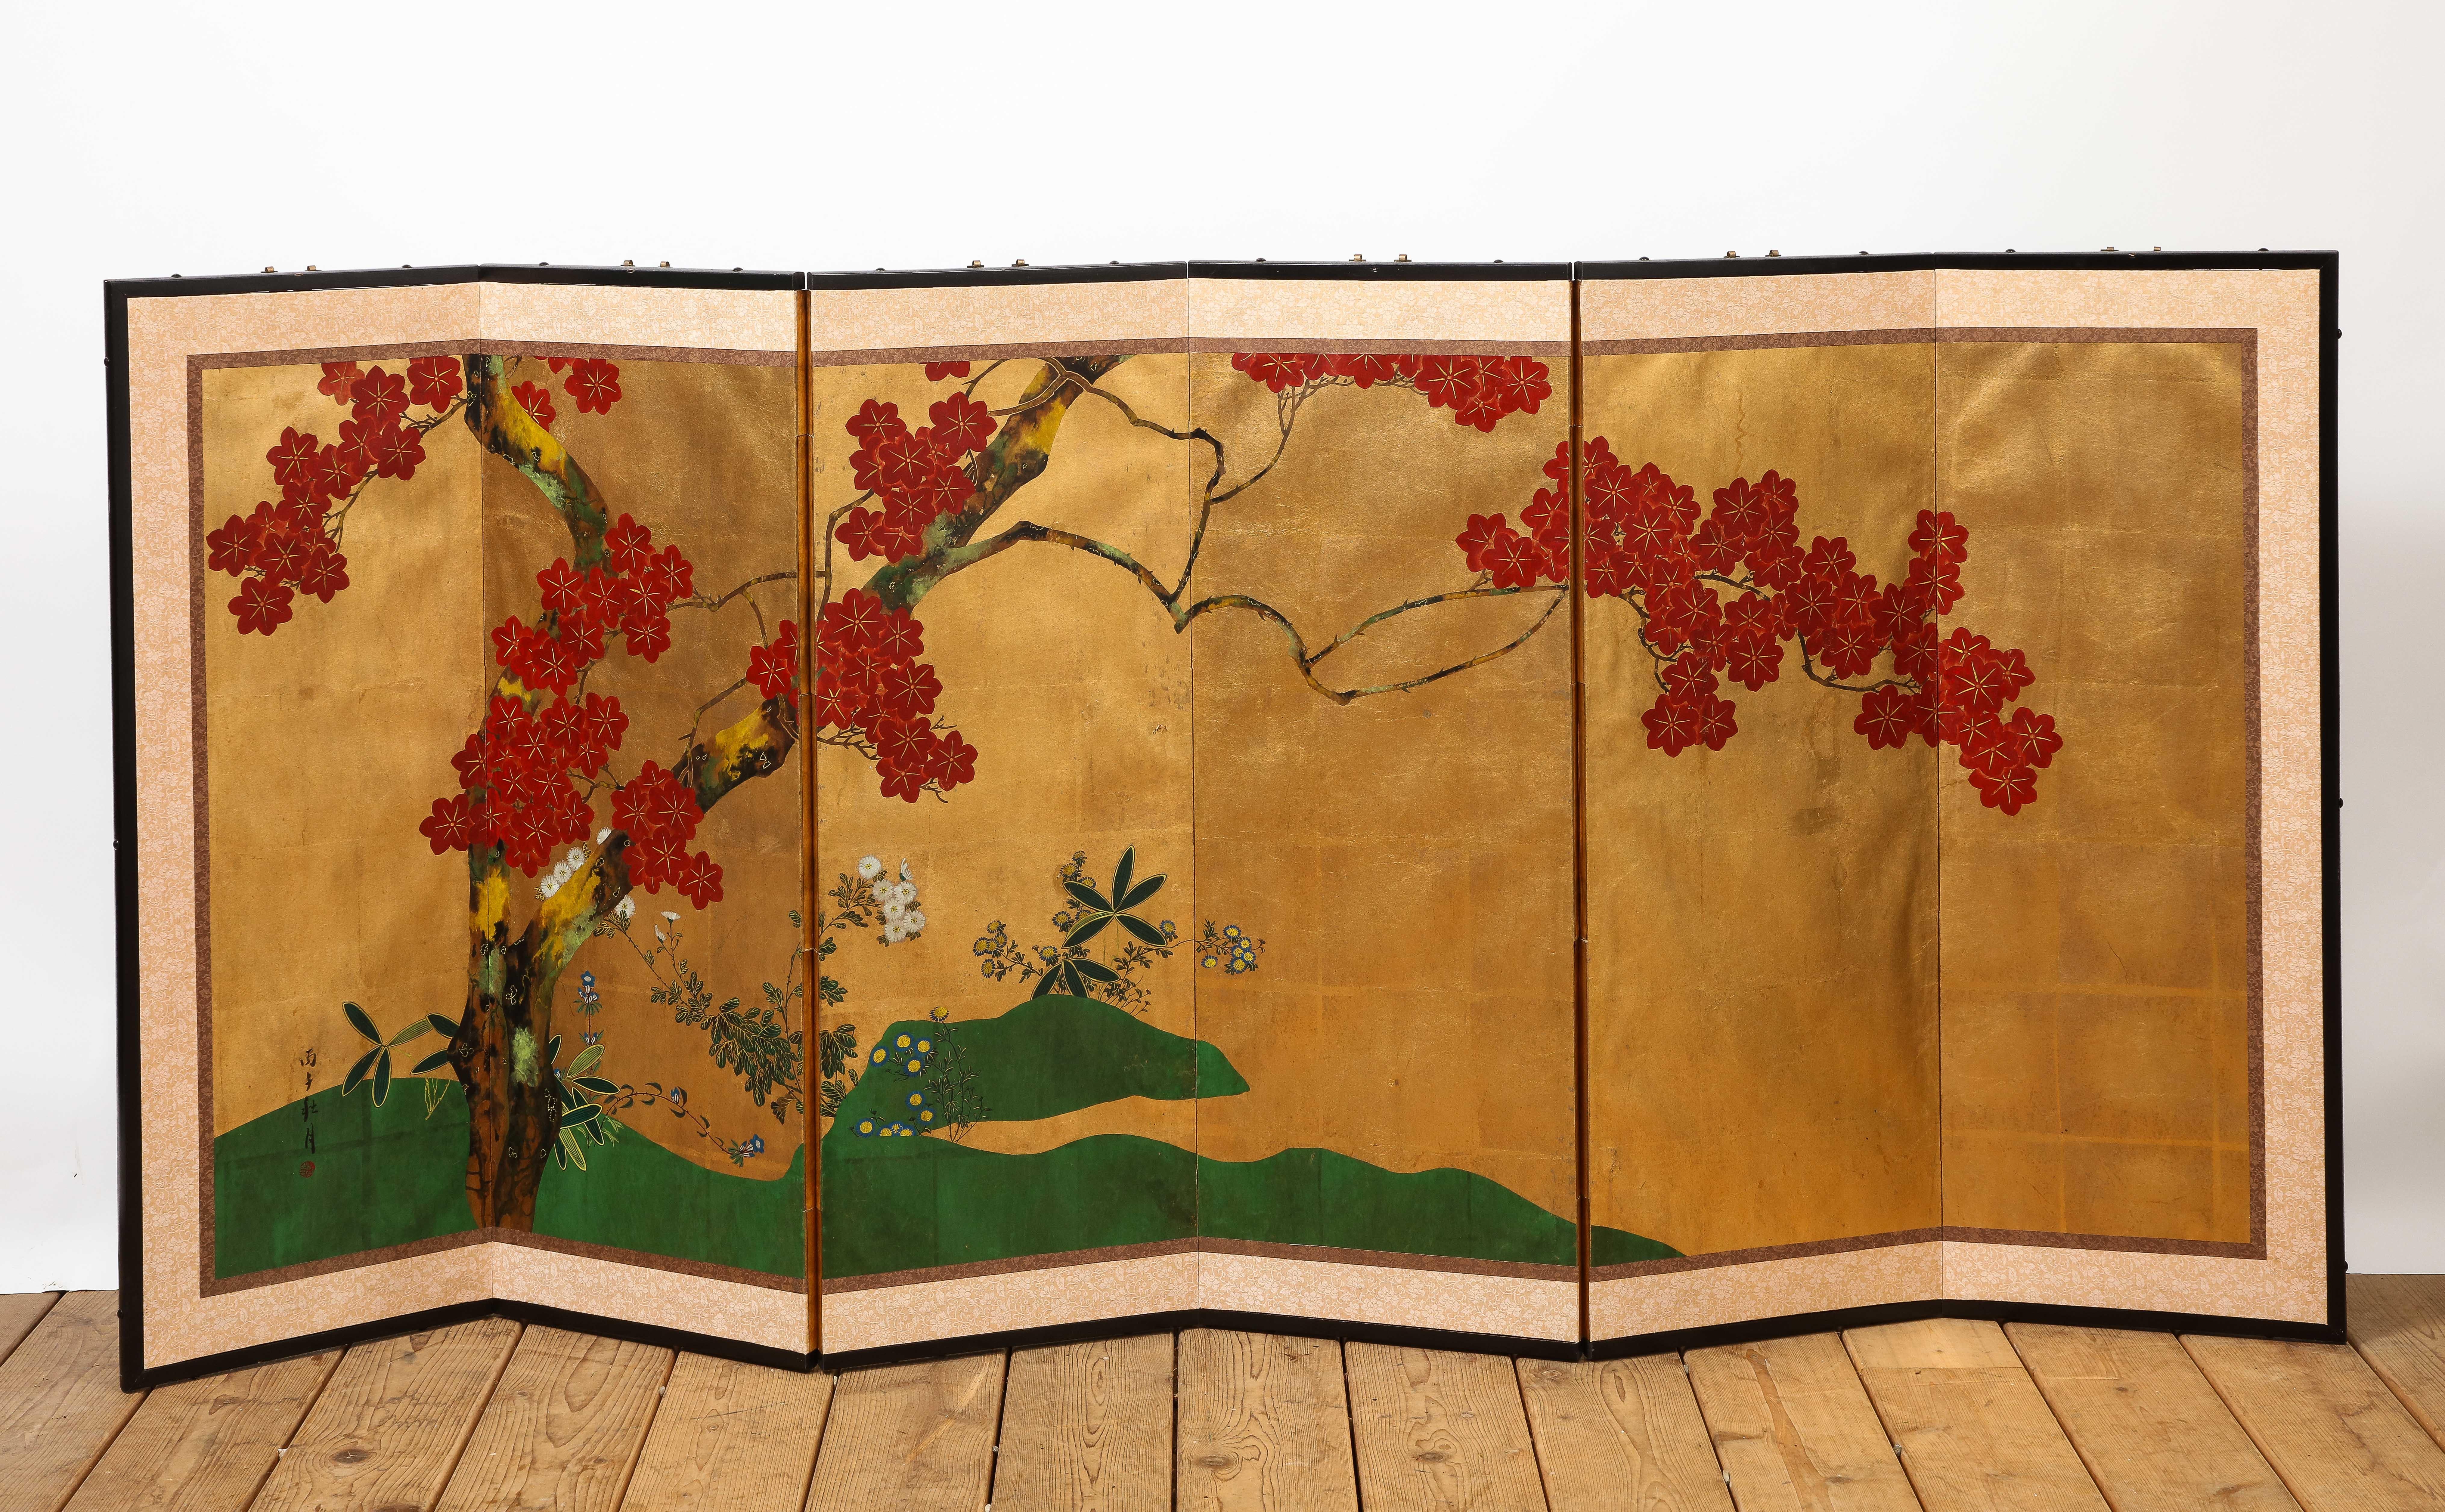 Écran à six panneaux de style chinois DeGournay, orné de fleurs vibrantes. Décor en papier sur une face, cadre et support en bois. 20e siècle français. Des ferrures de suspension se trouvent sur la partie supérieure. 